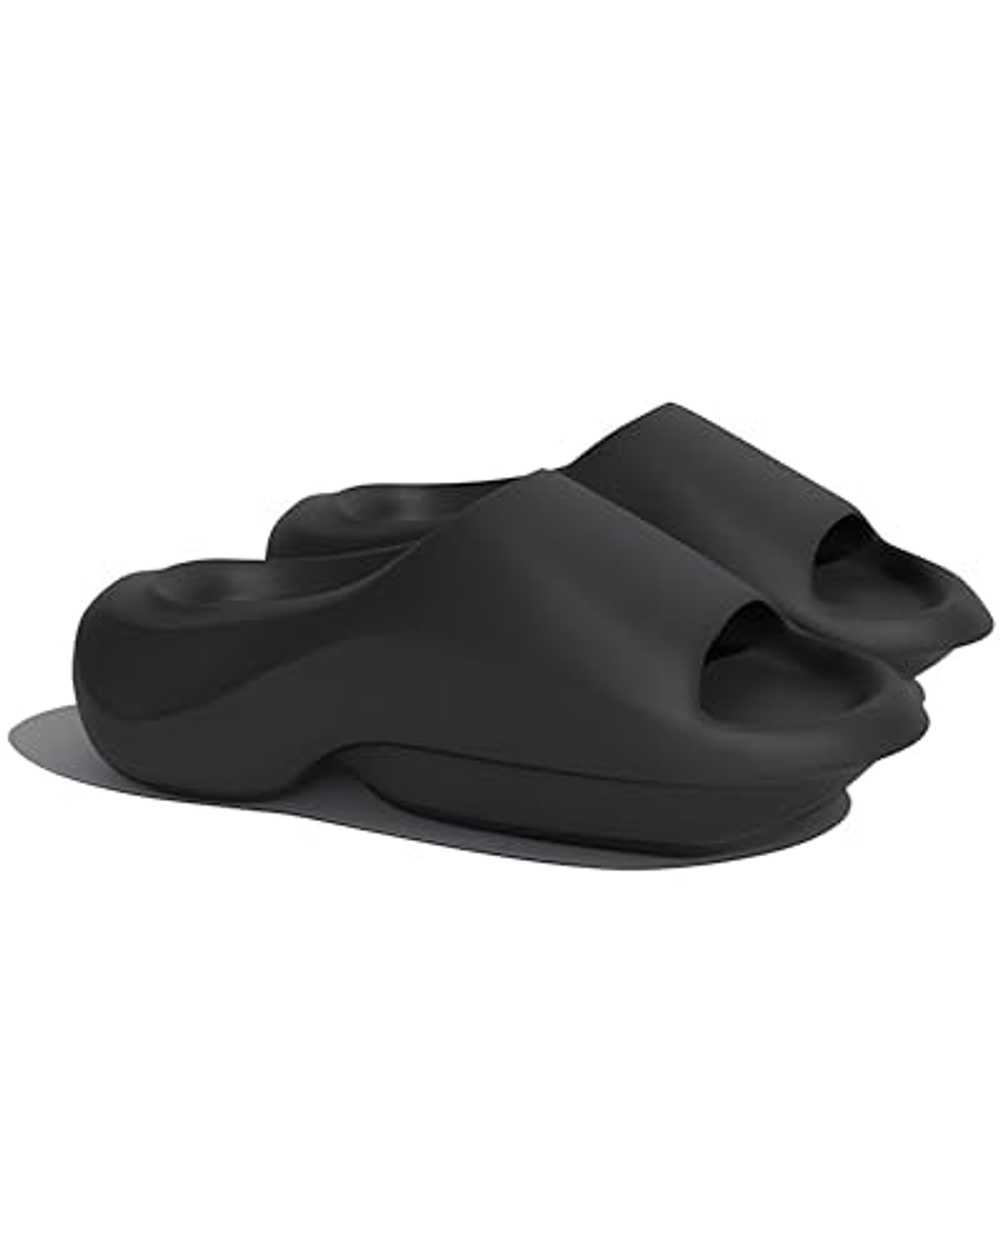 Ocean Ventures Black Platform Sandals Sandals Wom… - image 1